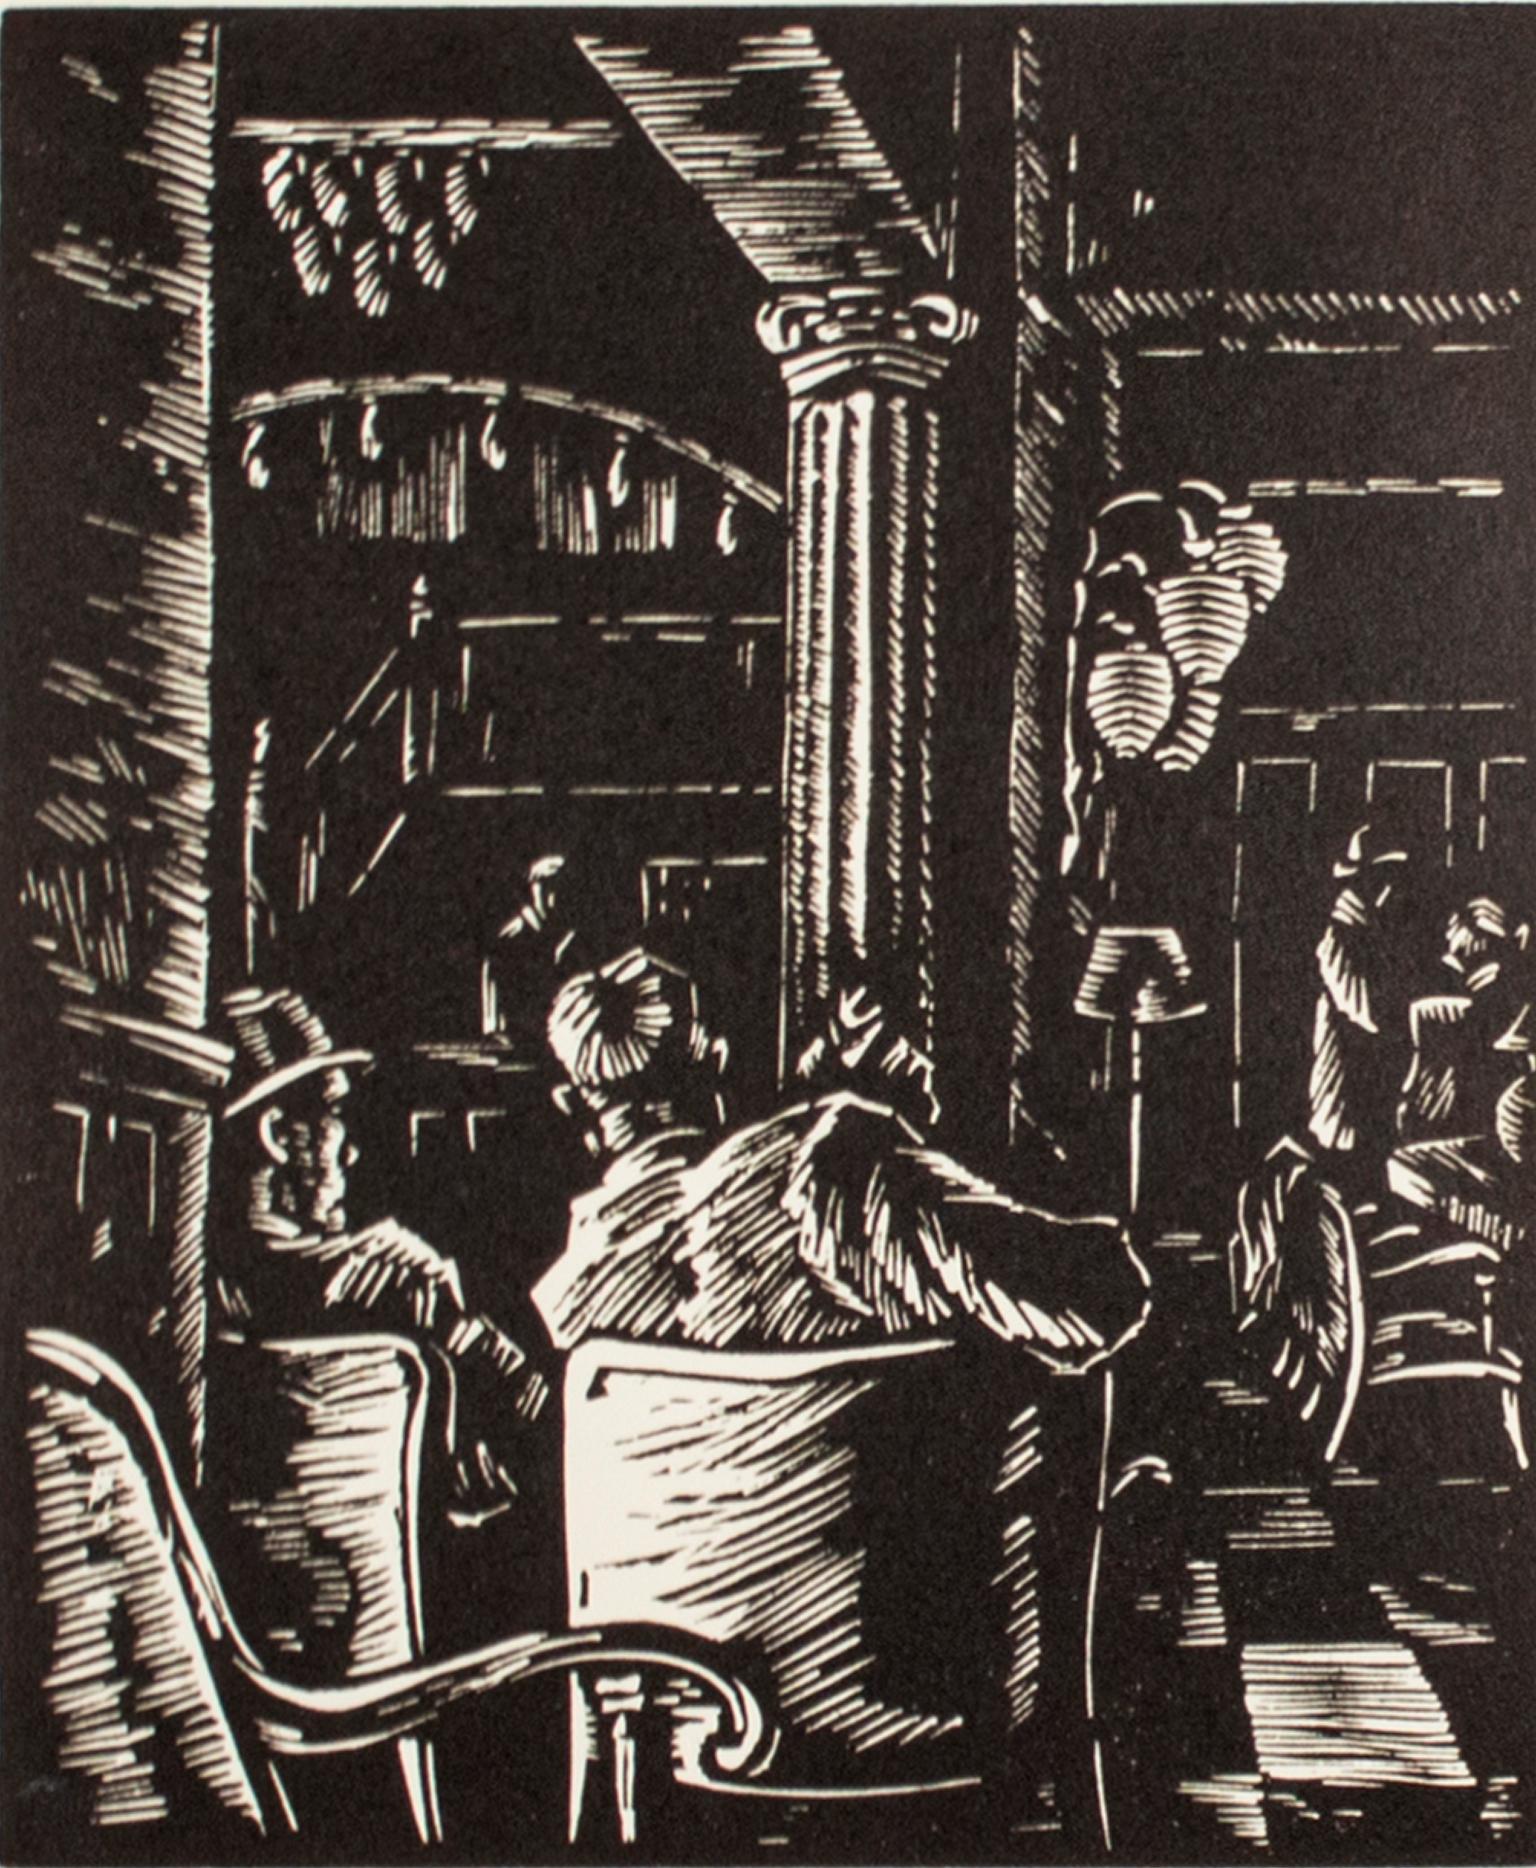 "Hotel Lobby" ist ein Original-Linoleumdruck von Alexander Tillotson. Es zeigt den Blick auf eine Hotellobby aus der Rückenperspektive zweier Männer. Die dicken Linien und der minimale negative Raum vermitteln das Gefühl, dass die Hotellobby dunkel